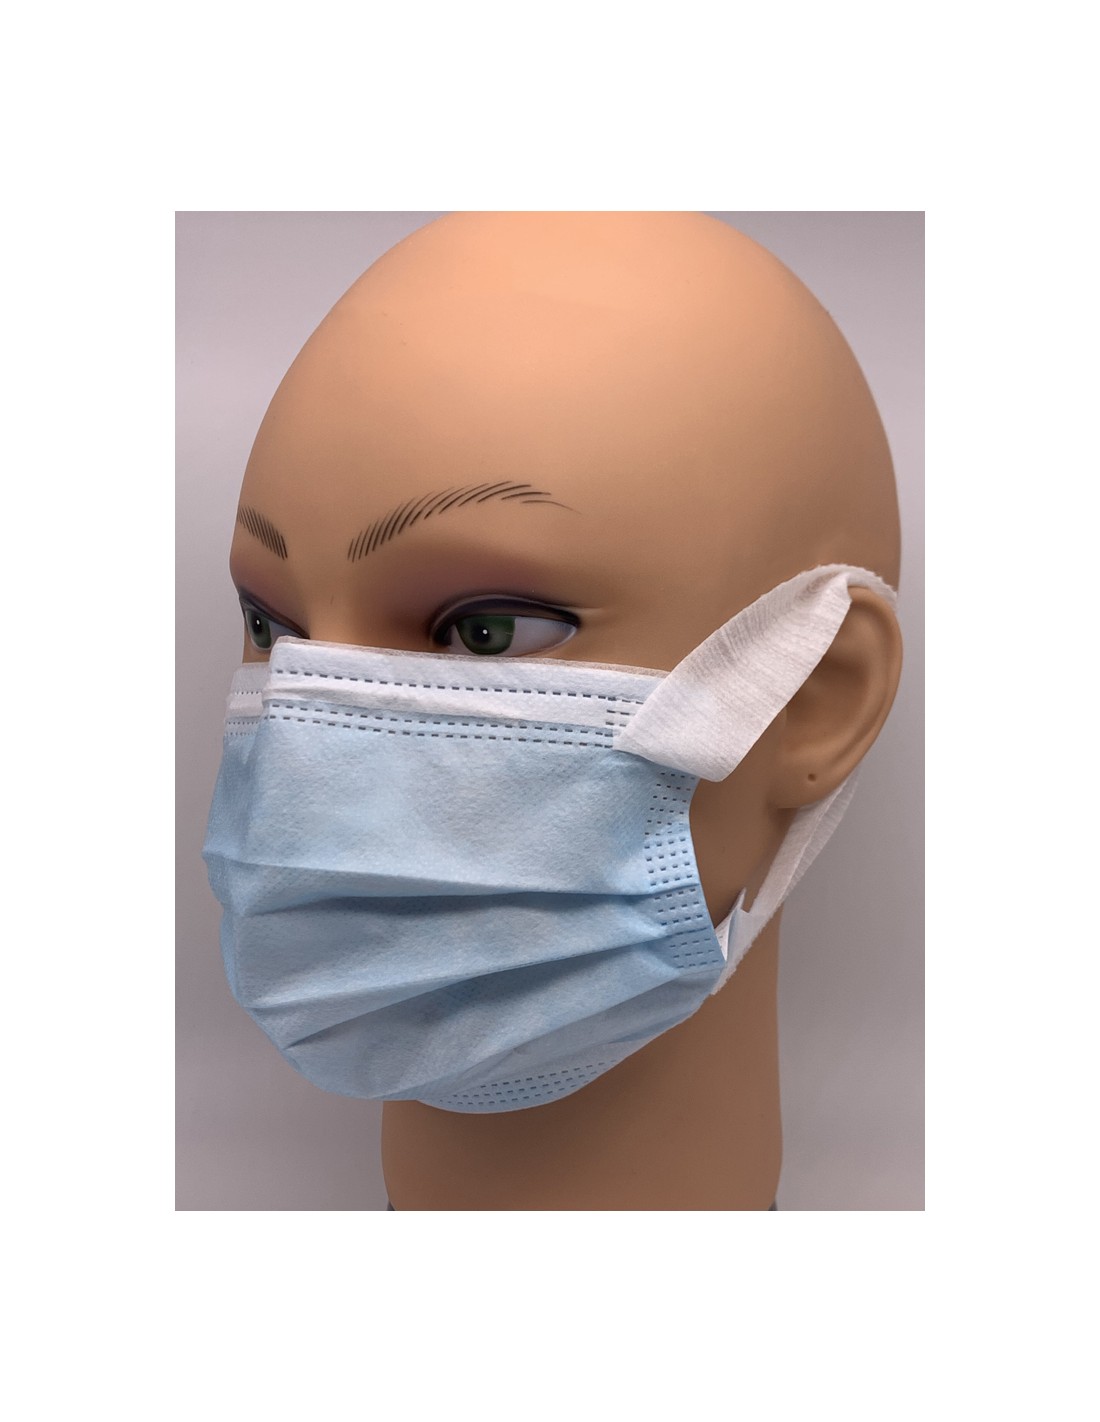 Mascherine Chirurgiche Tipo IIR Lacci morbidi - (da 0,15 € a 0,13 €) - Dispositivo medico certificat